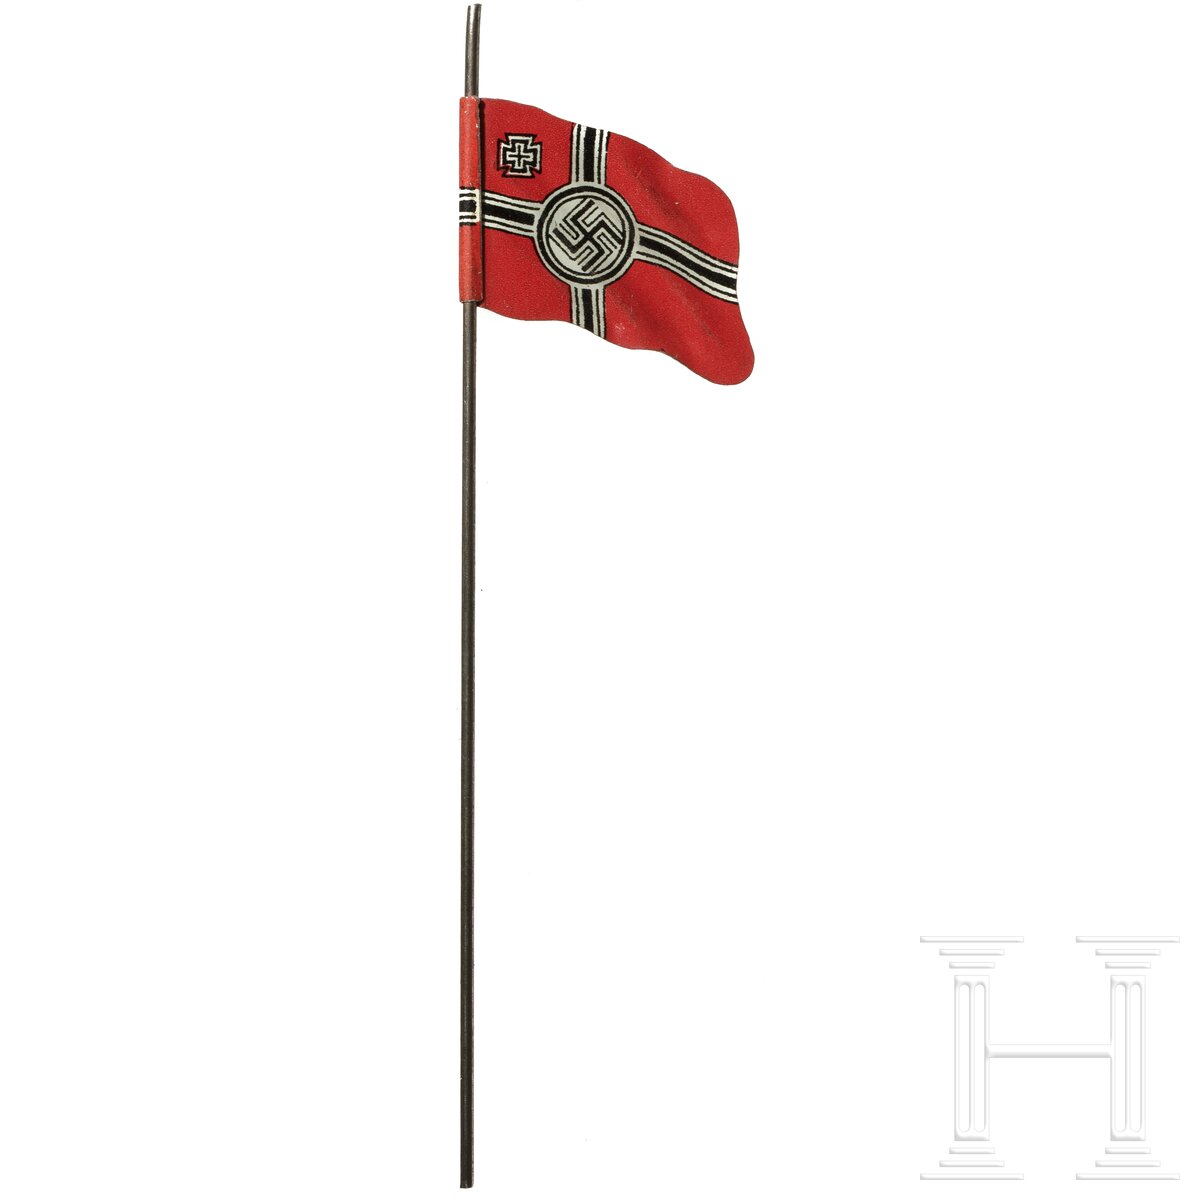 15 englische und deutsche Elastolin- und Lineol-Soldaten sowie eine Blechflagge - Image 7 of 7